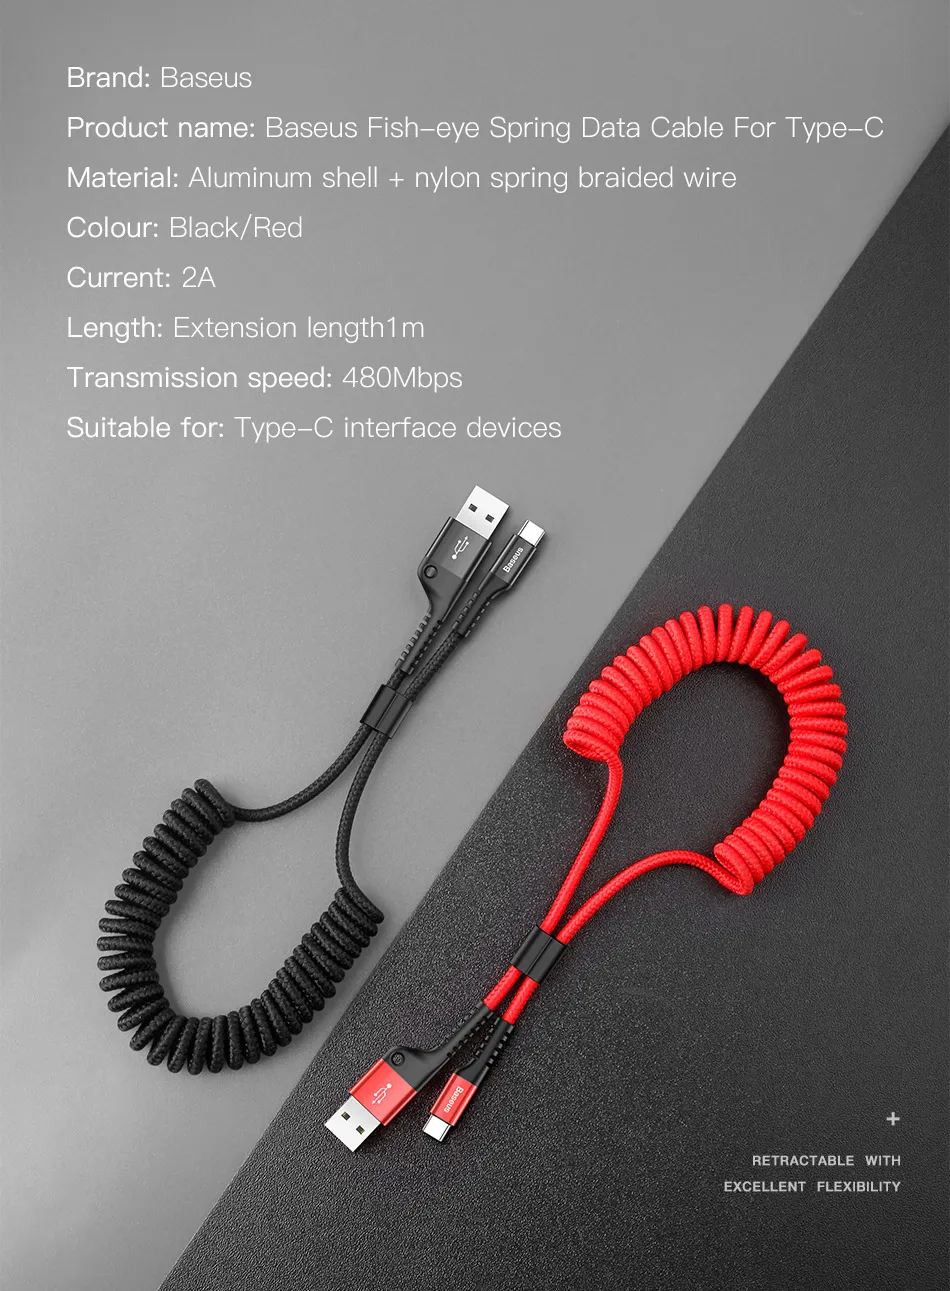 Baseus пружинный usb type-C кабель idea для автомобильного стиля хранения гибкий 2A USB C зарядный кабель для Xiaomi Mi 8 type-c устройства